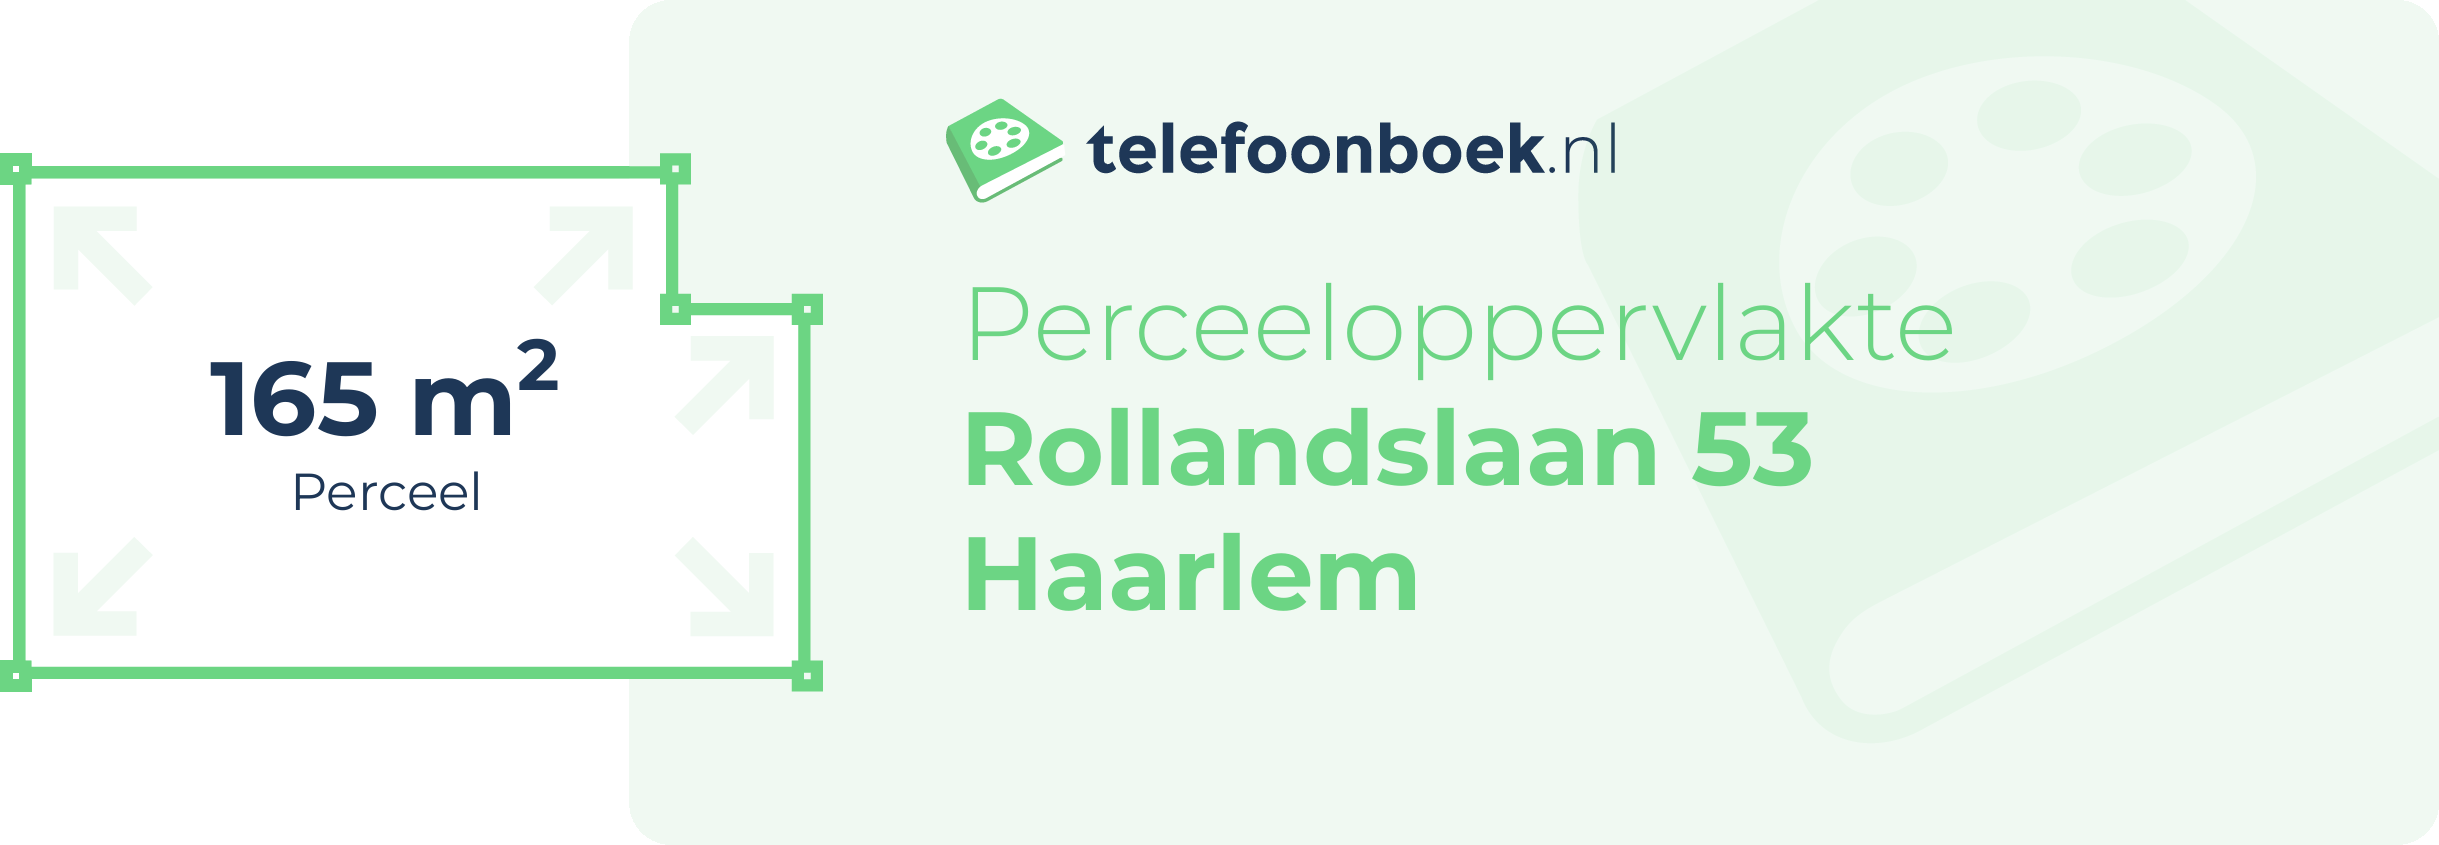 Perceeloppervlakte Rollandslaan 53 Haarlem